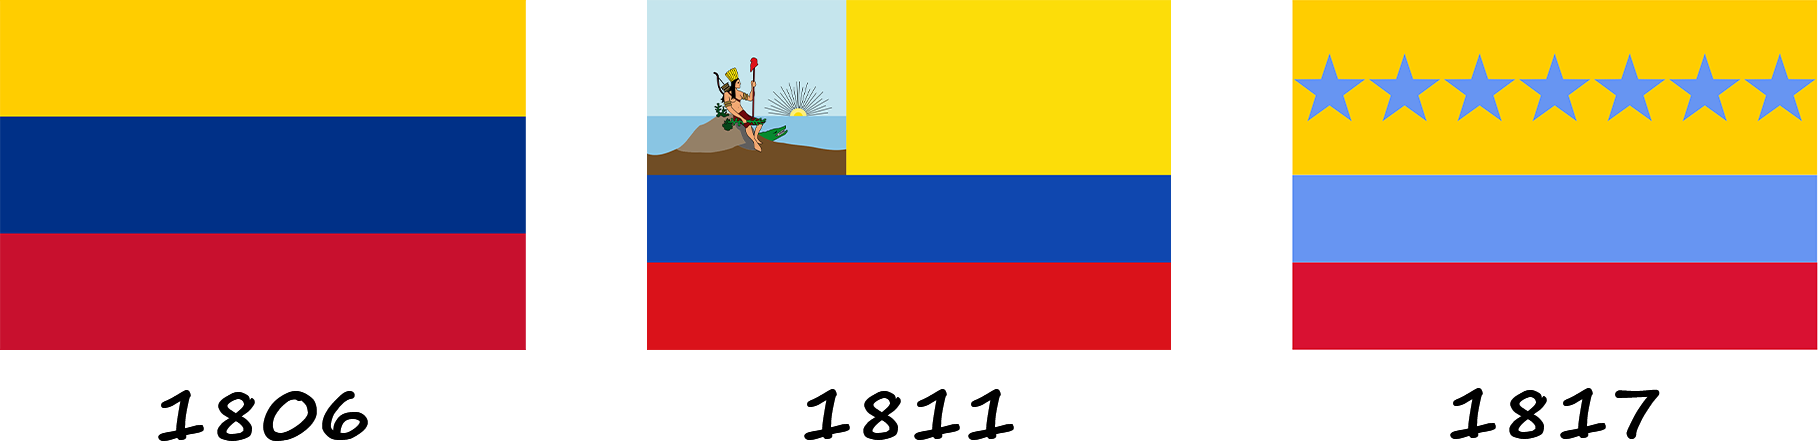 Evolución de la bandera de Venezuela